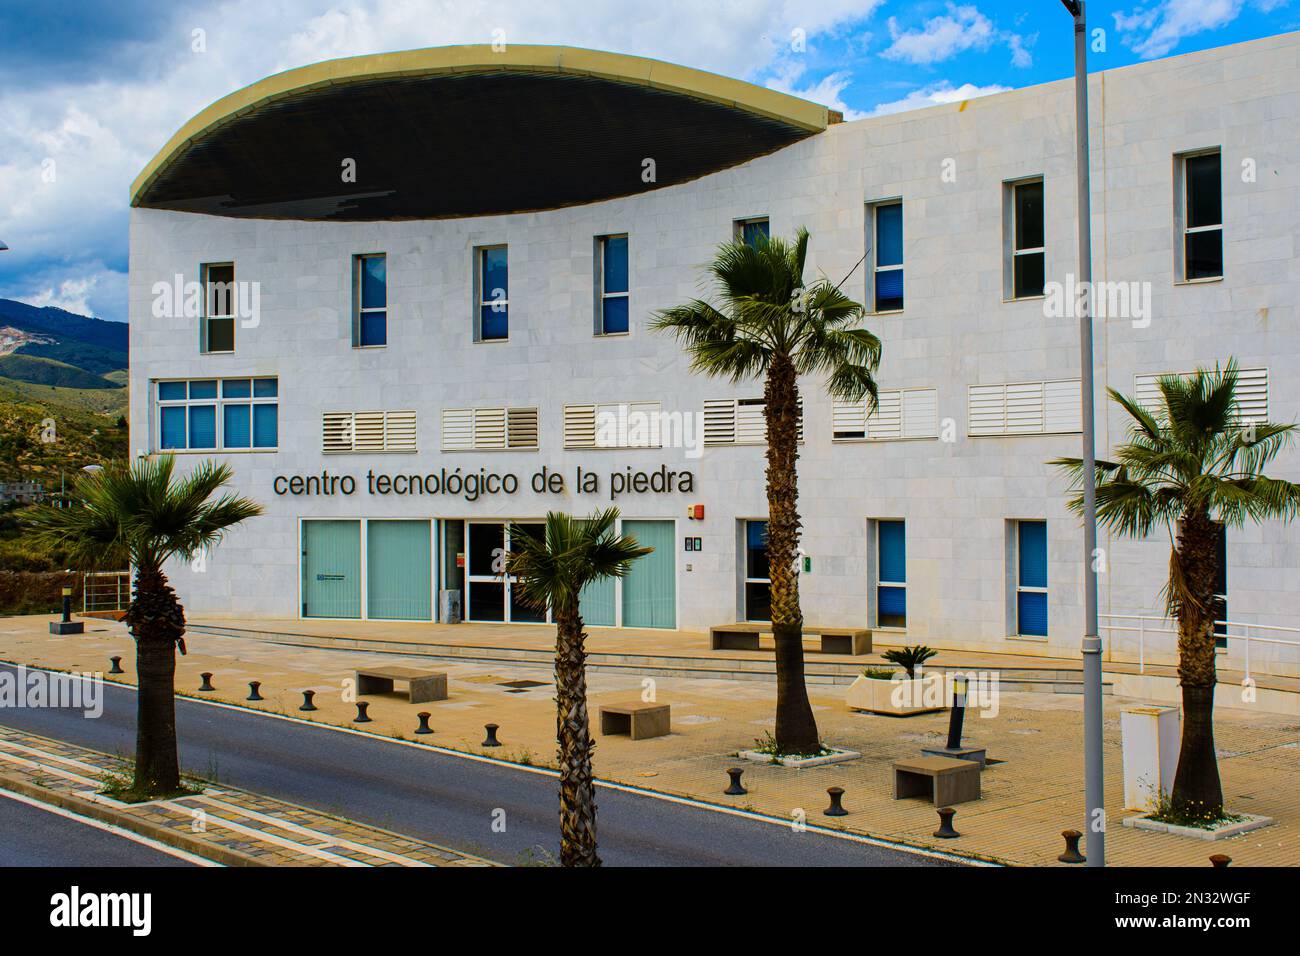 Centro Tecnológico de la Piedra (Technological Centre for Rock). Macael, Almeria province, Spain. Stock Photo